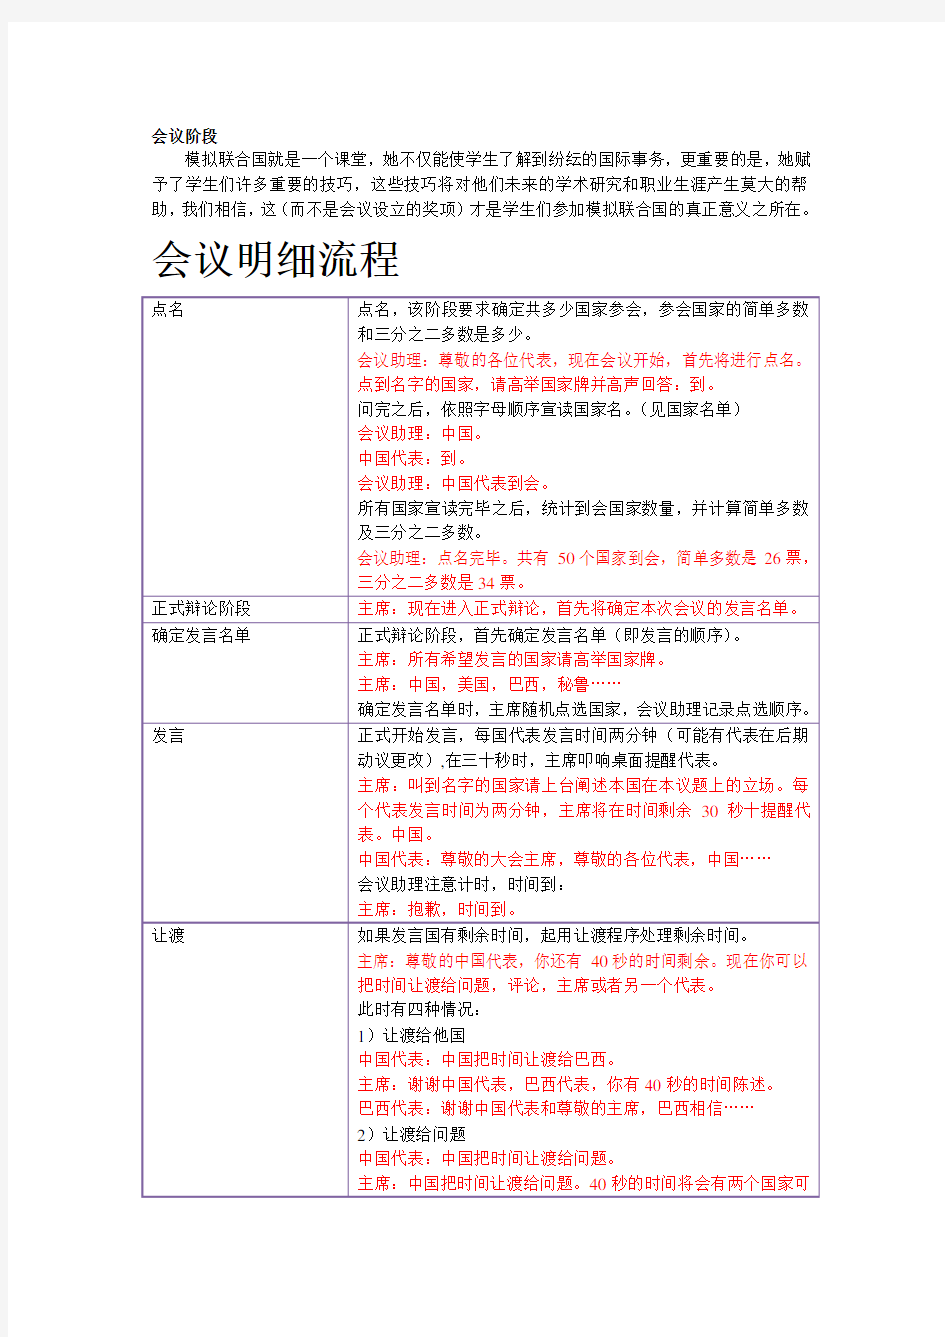 模联会议中文流程详解教学提纲